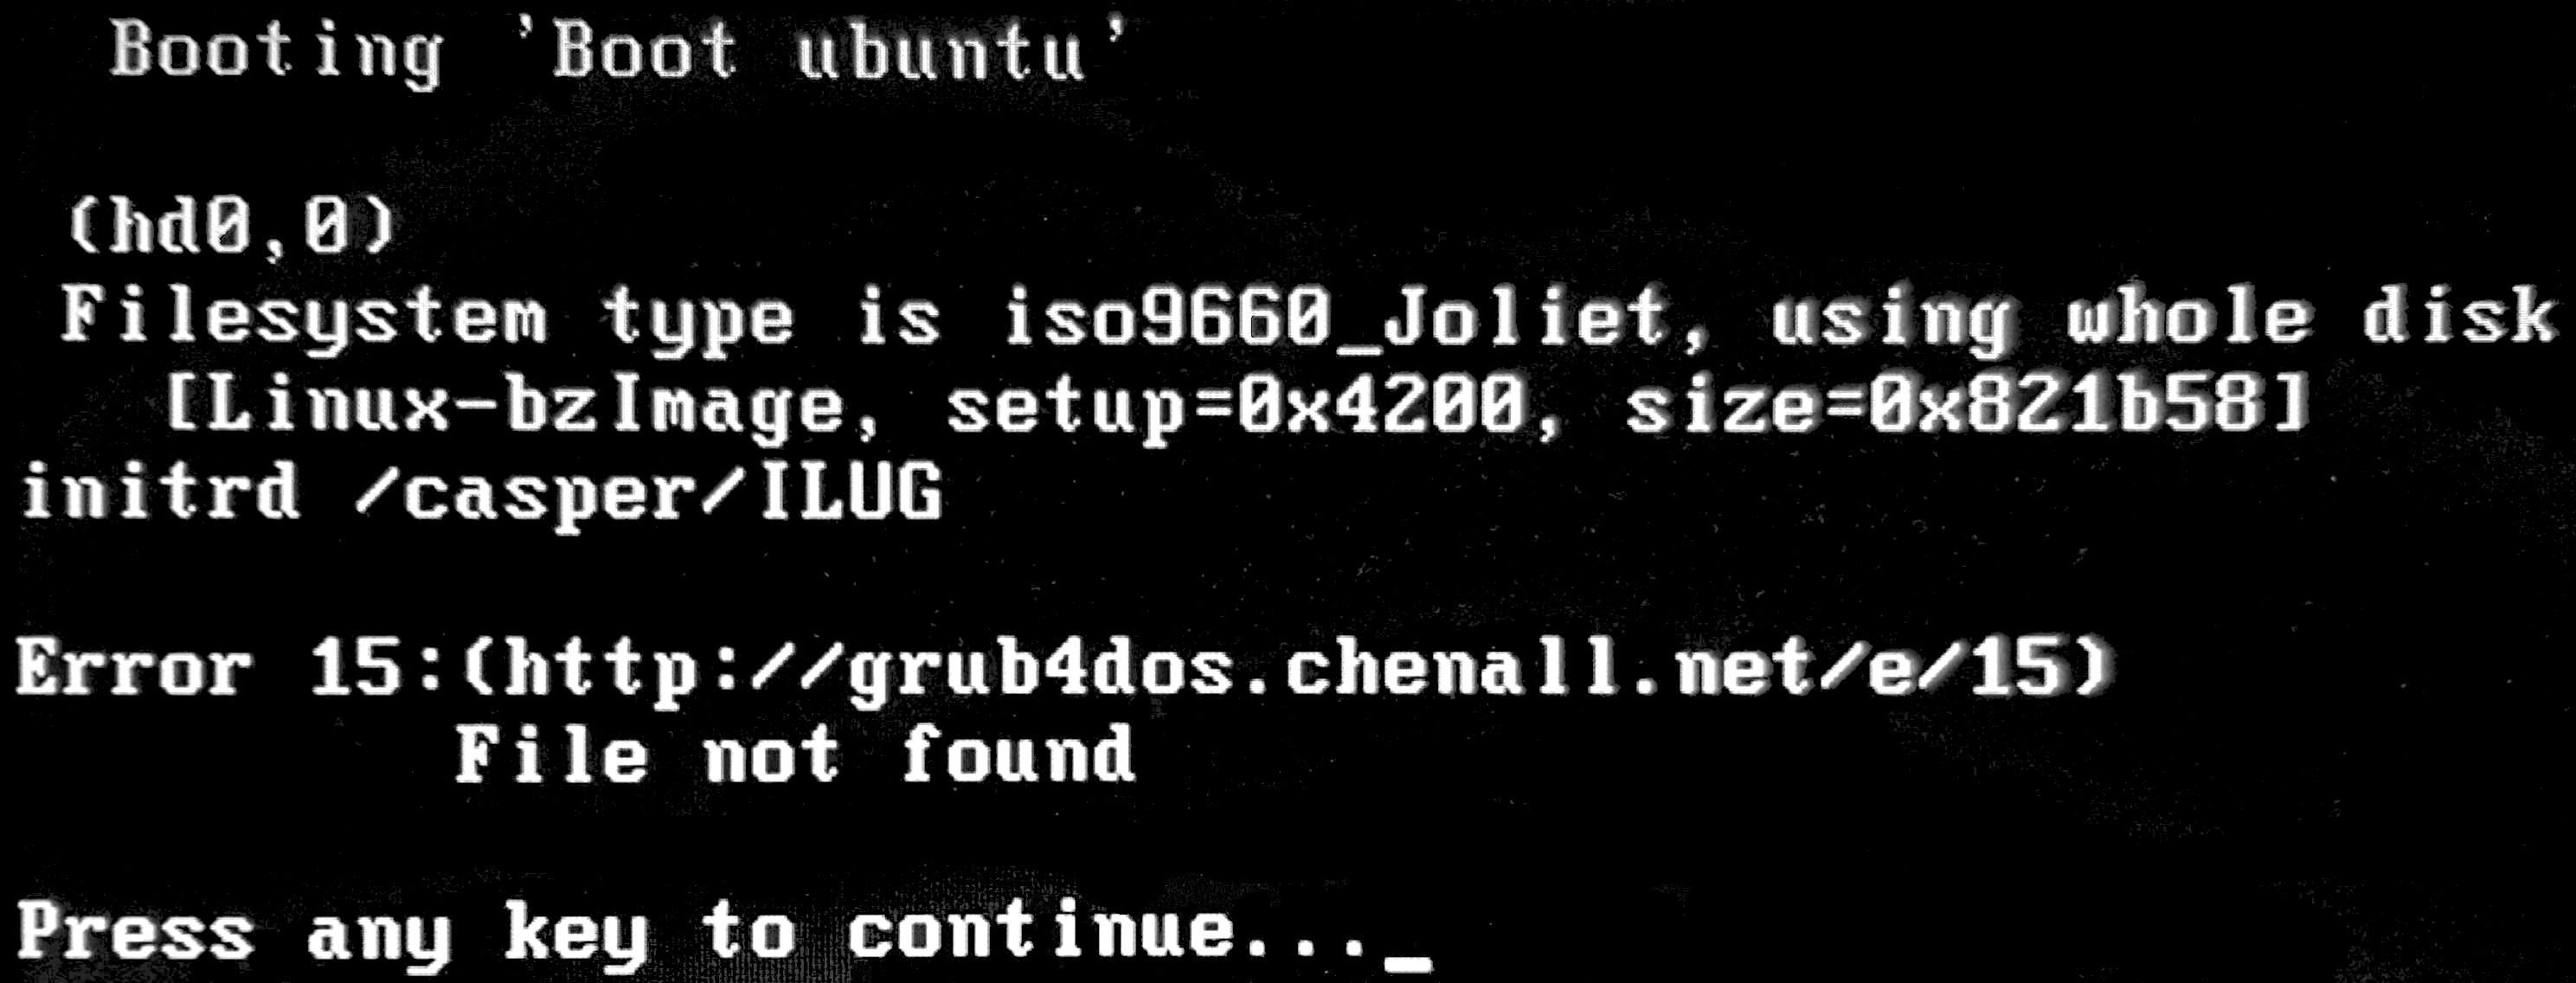 grub 30 error linux